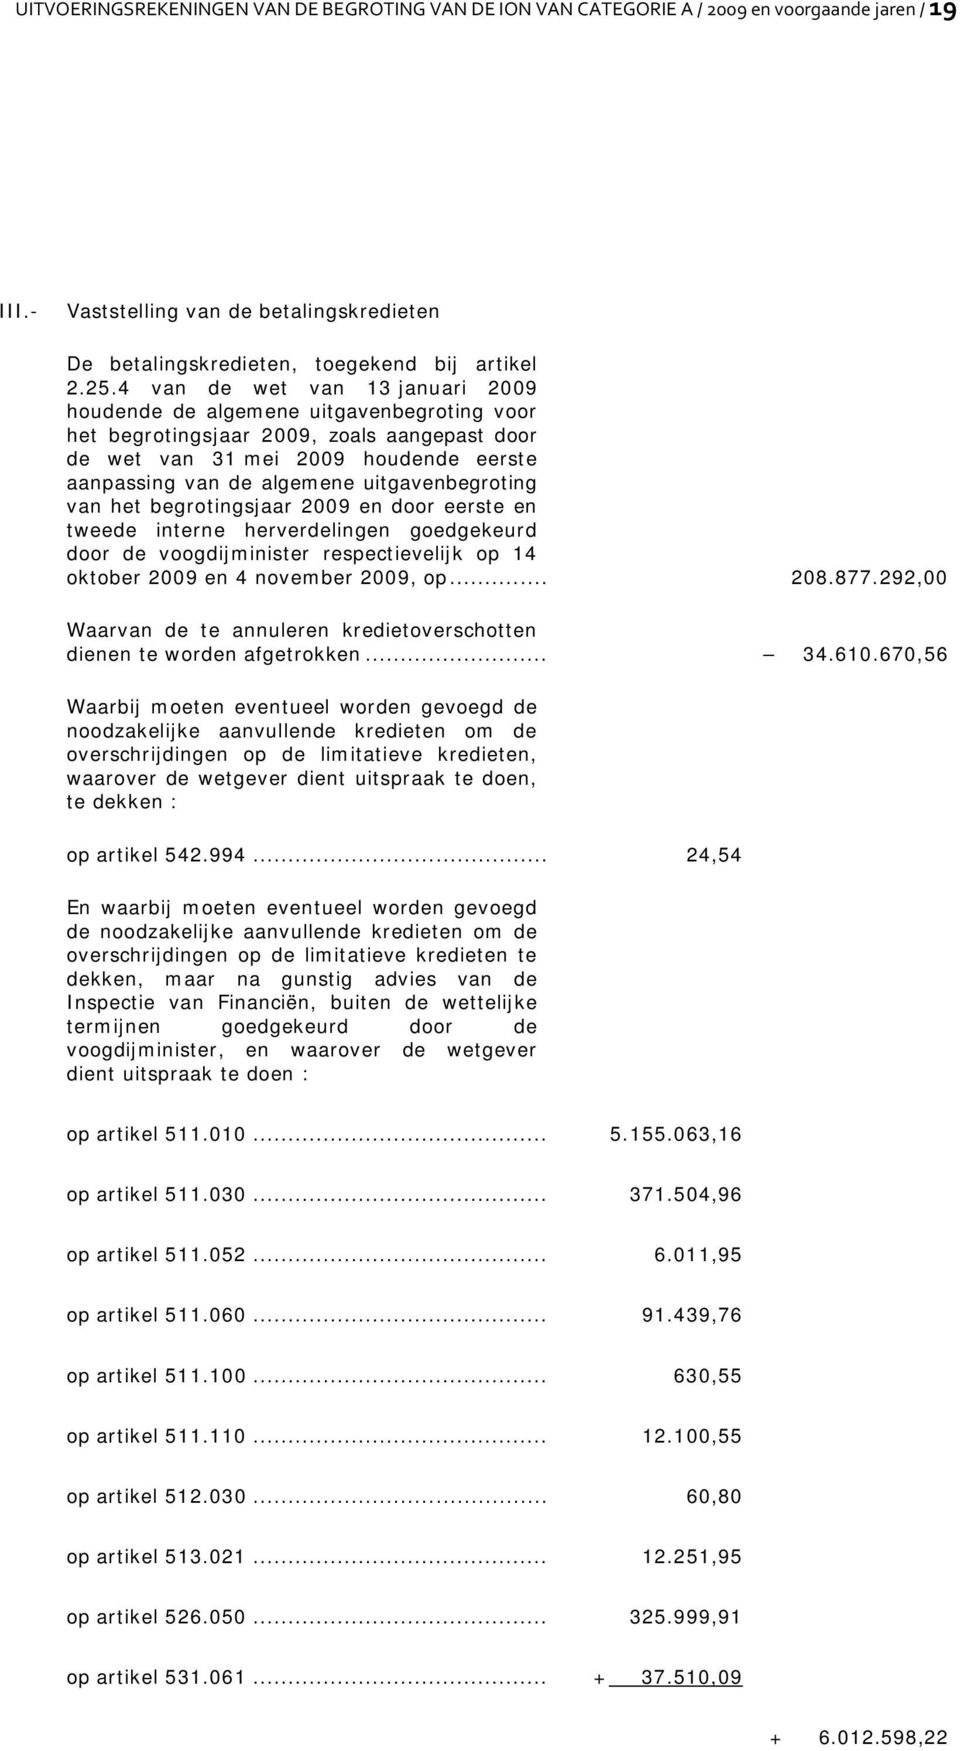 uitgavenbegroting van het begrotingsjaar 2009 en door eerste en tweede interne herverdelingen goedgekeurd door de voogdijminister respectievelijk op 14 oktober 2009 en 4 november 2009, op... 208.877.